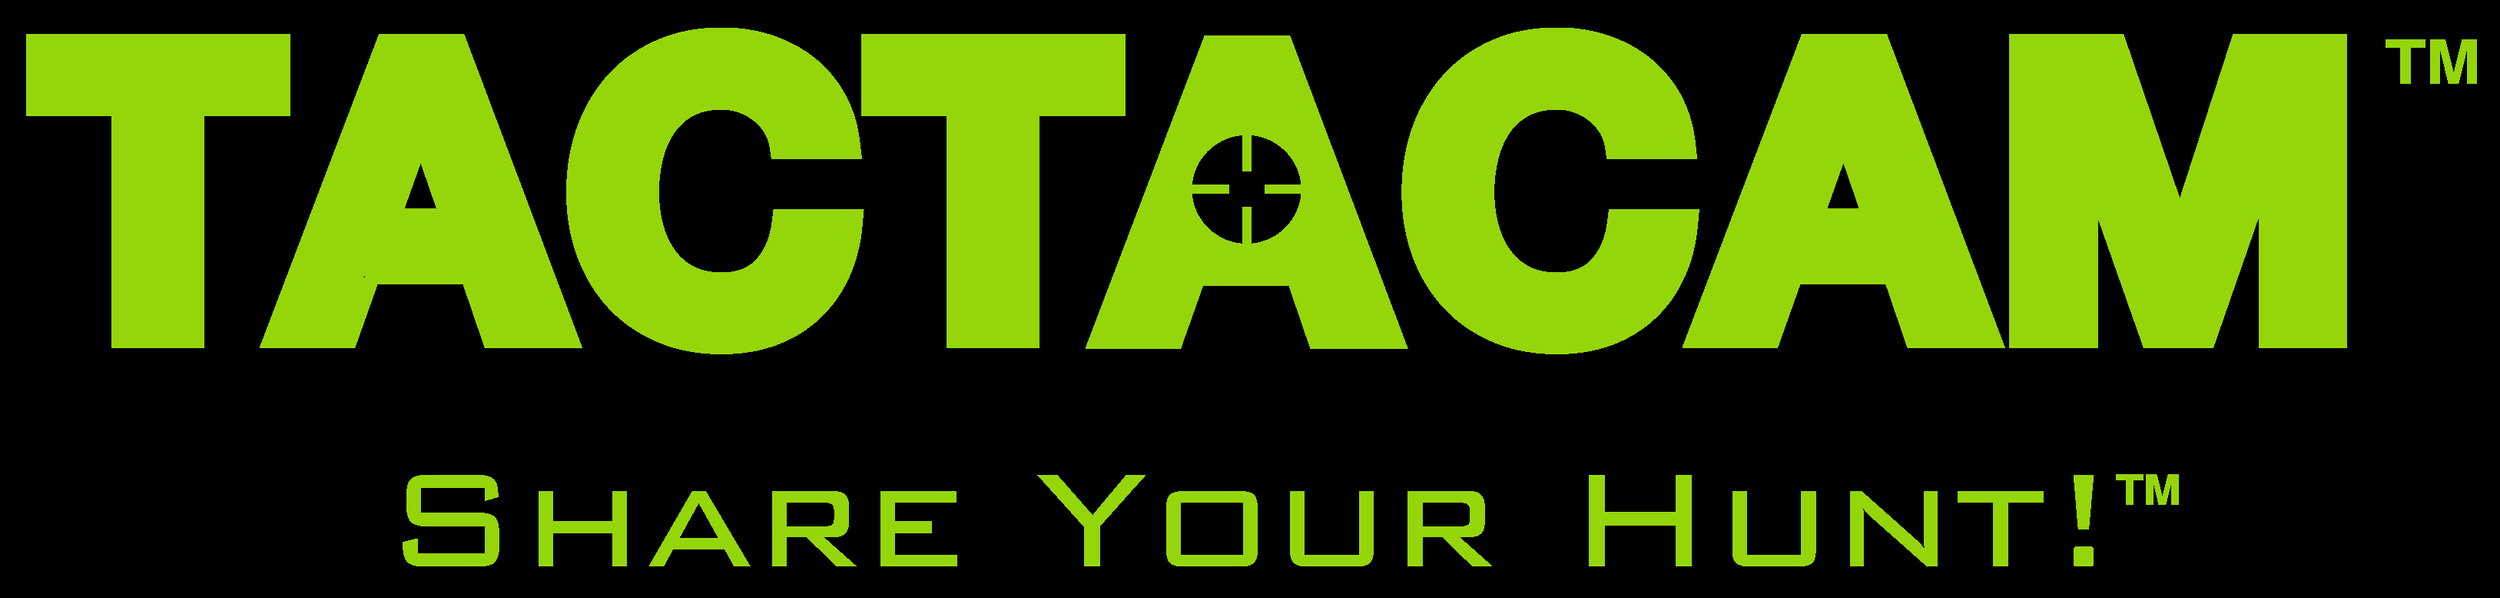 Tactacam logo_bigger.png